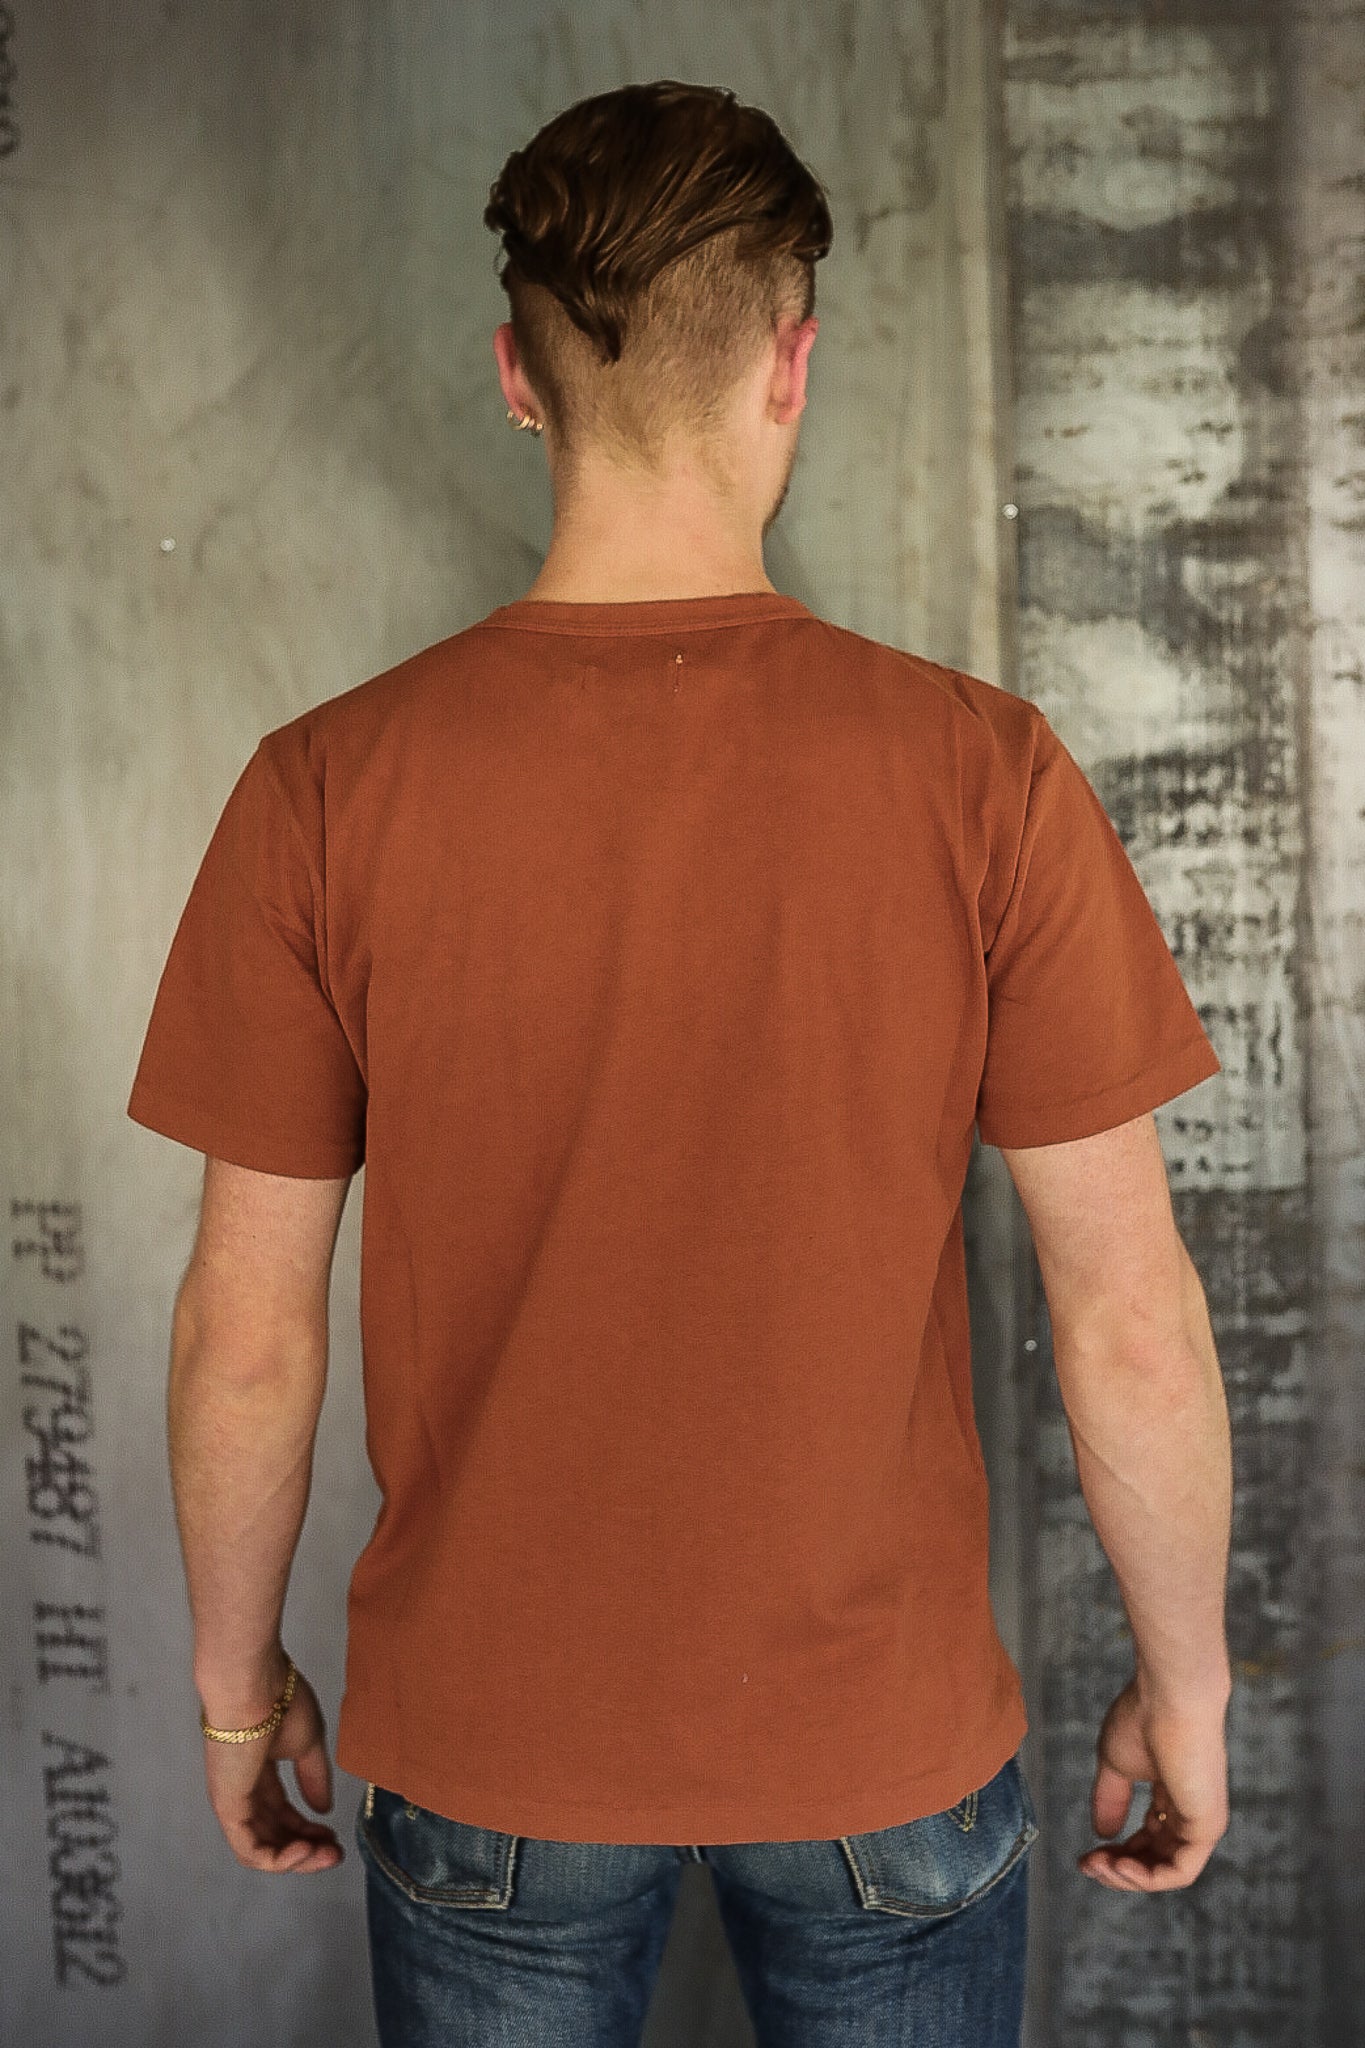 9 Ounce Pocket T-Shirt - Rust